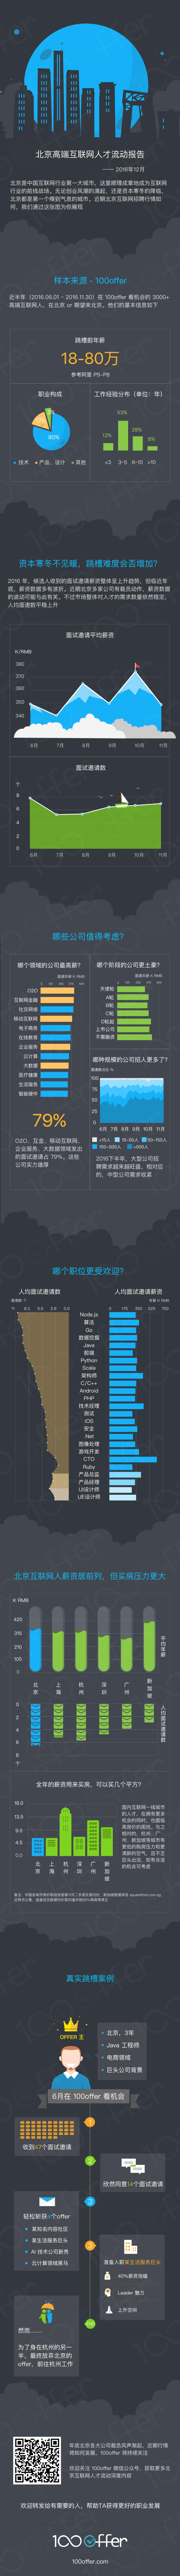 100offer：北京高端互联网人才流动研究报告（201612）